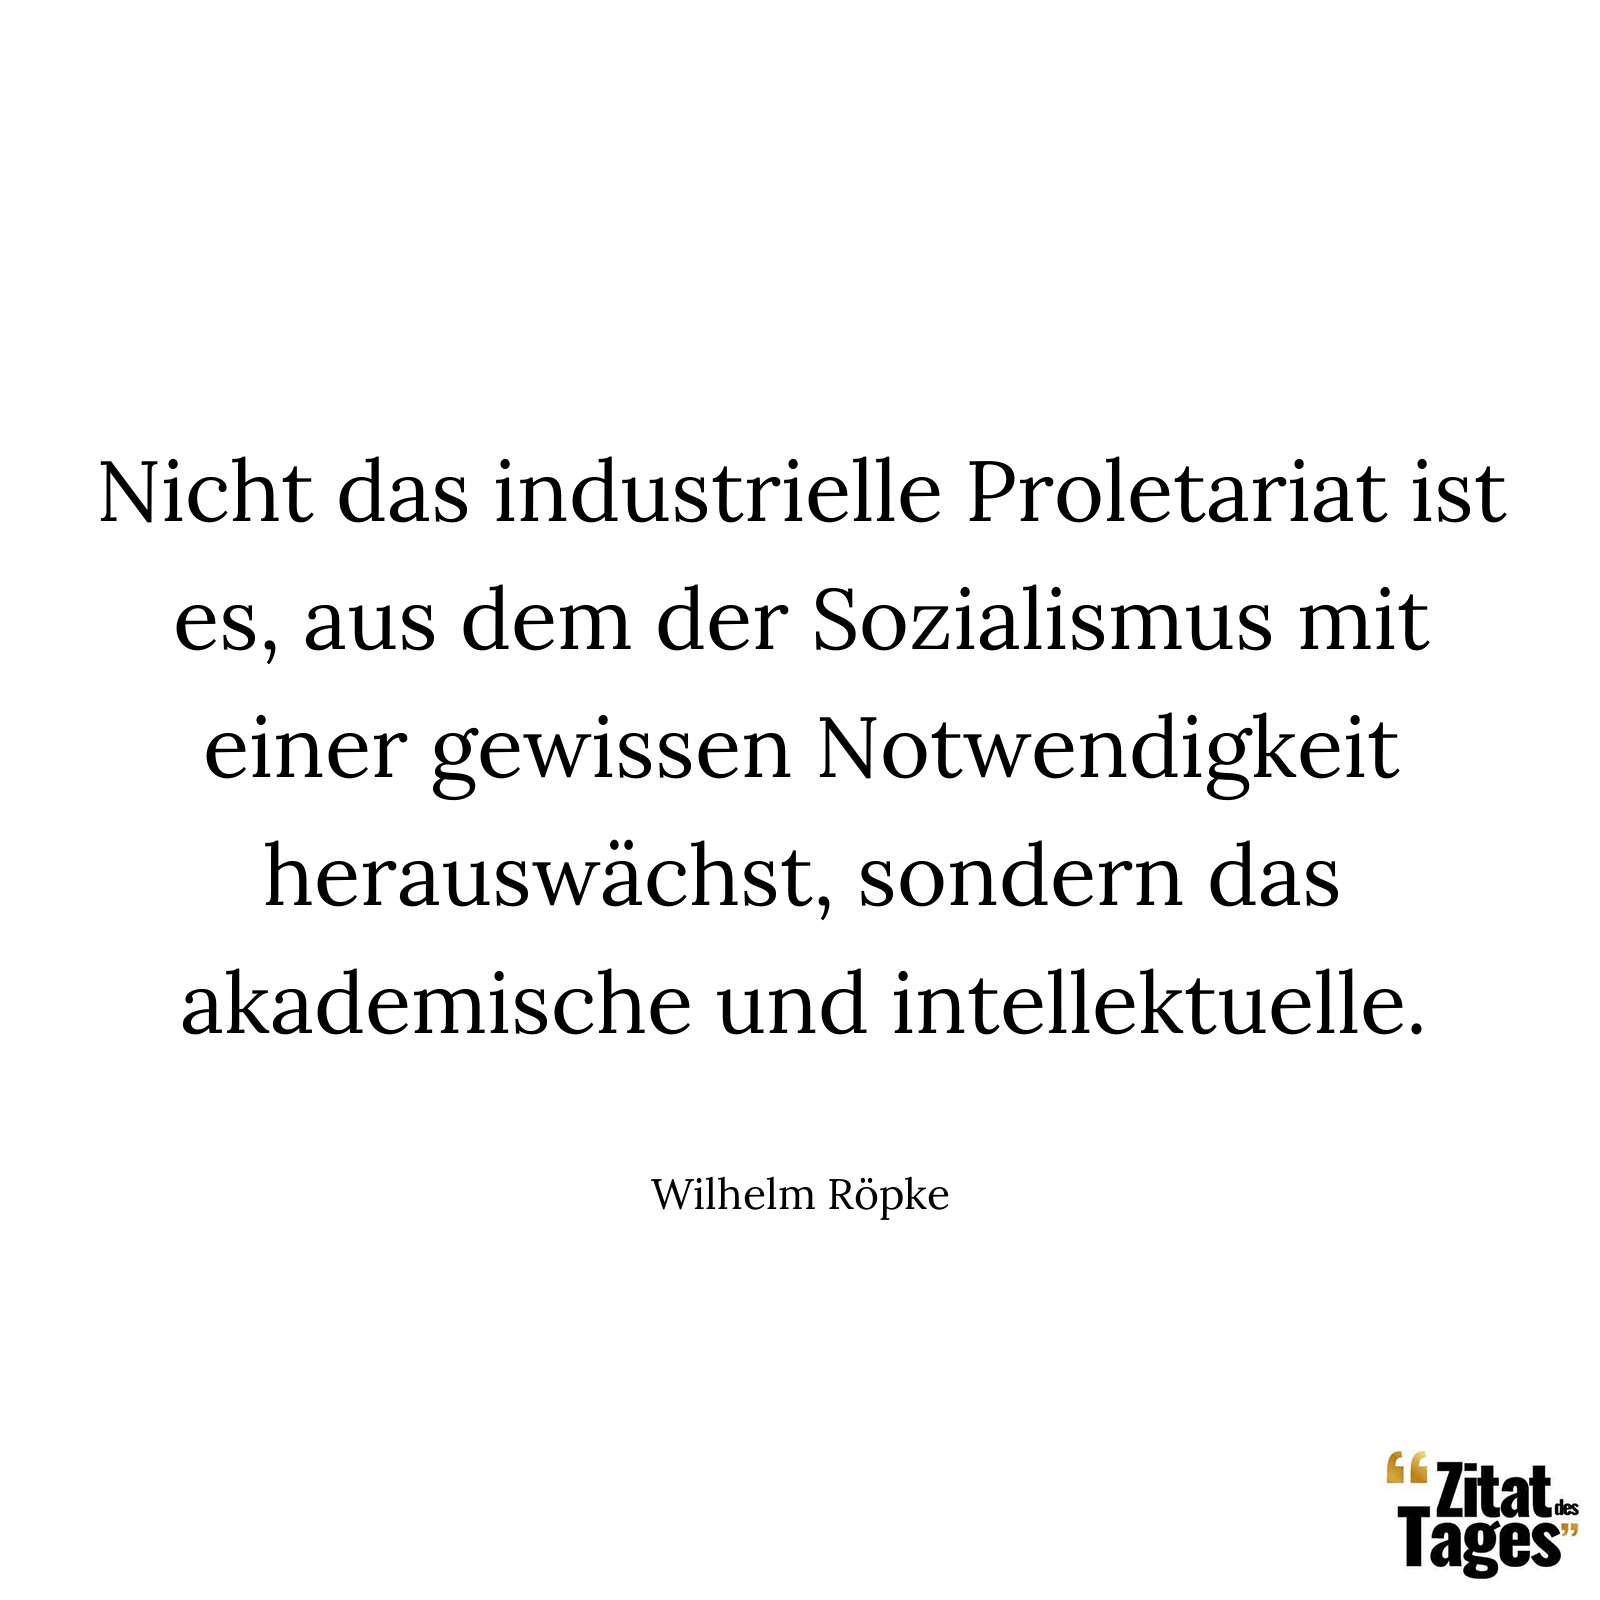 Nicht das industrielle Proletariat ist es, aus dem der Sozialismus mit einer gewissen Notwendigkeit herauswächst, sondern das akademische und intellektuelle. - Wilhelm Röpke